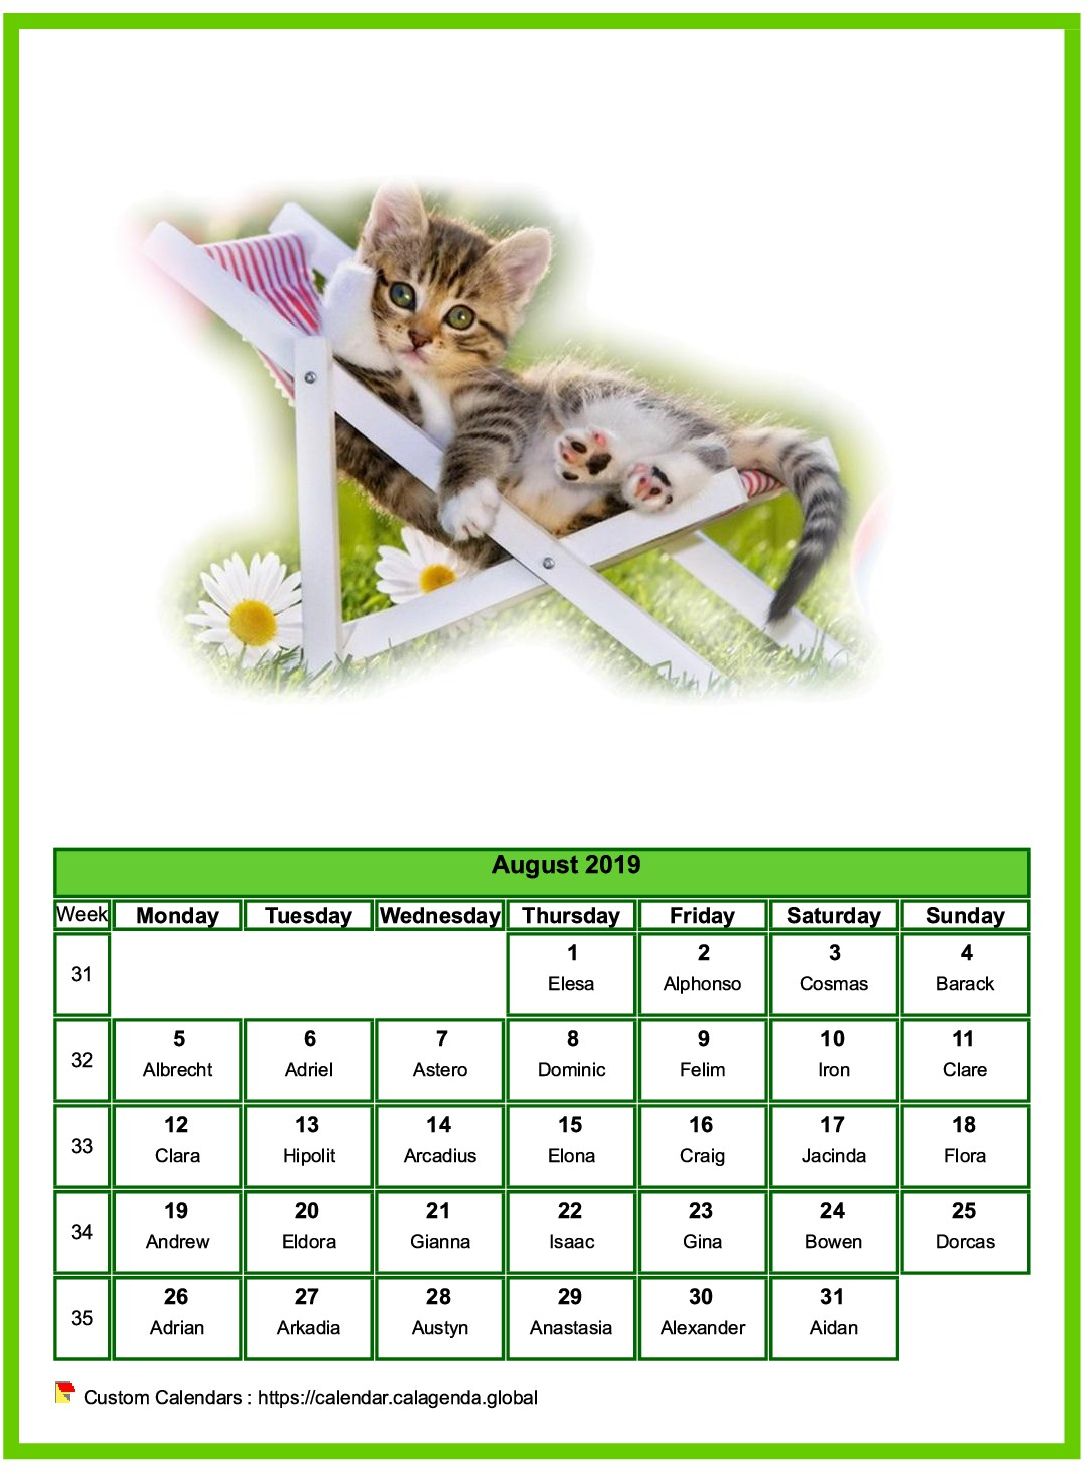 Calendar August 2019 cats